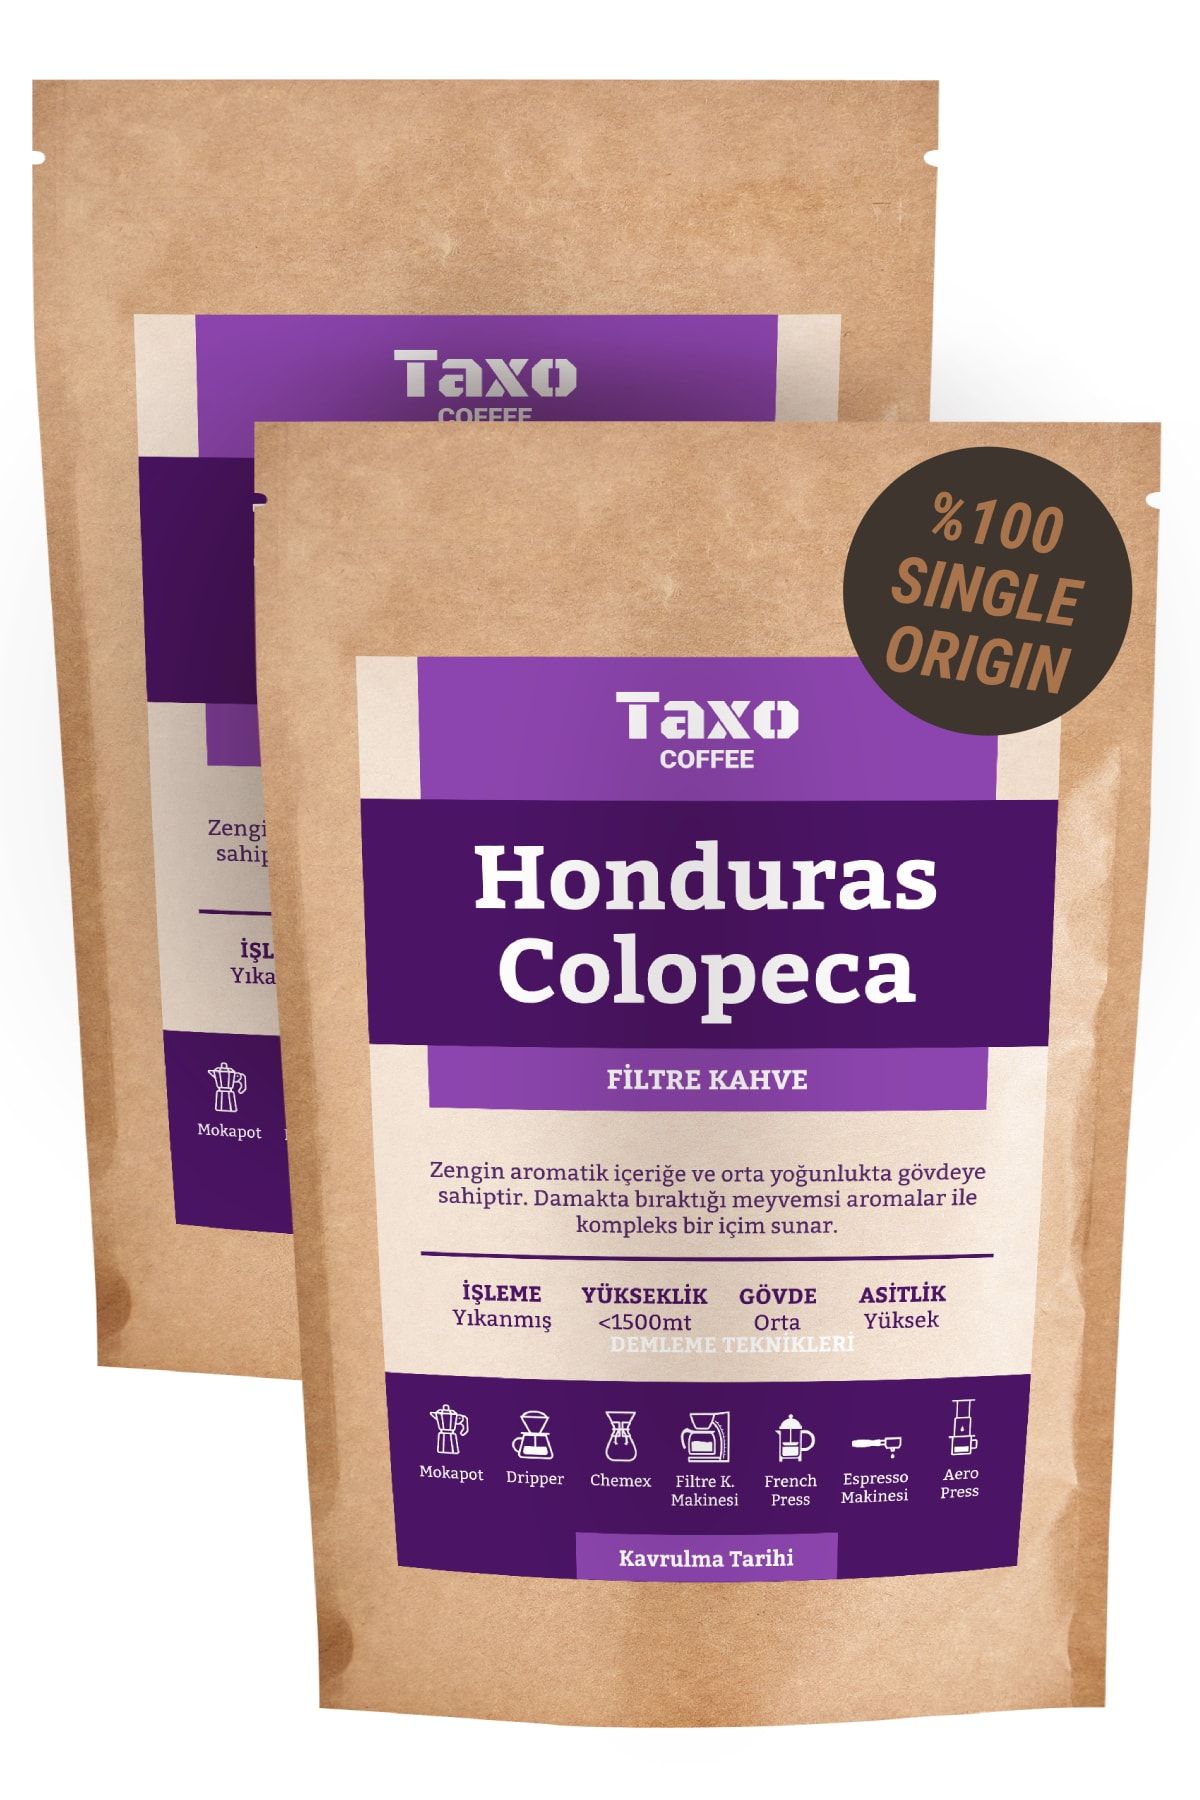 Taxo Coffee Honduras Cafe Colopeca 1kg Filtre Kahve